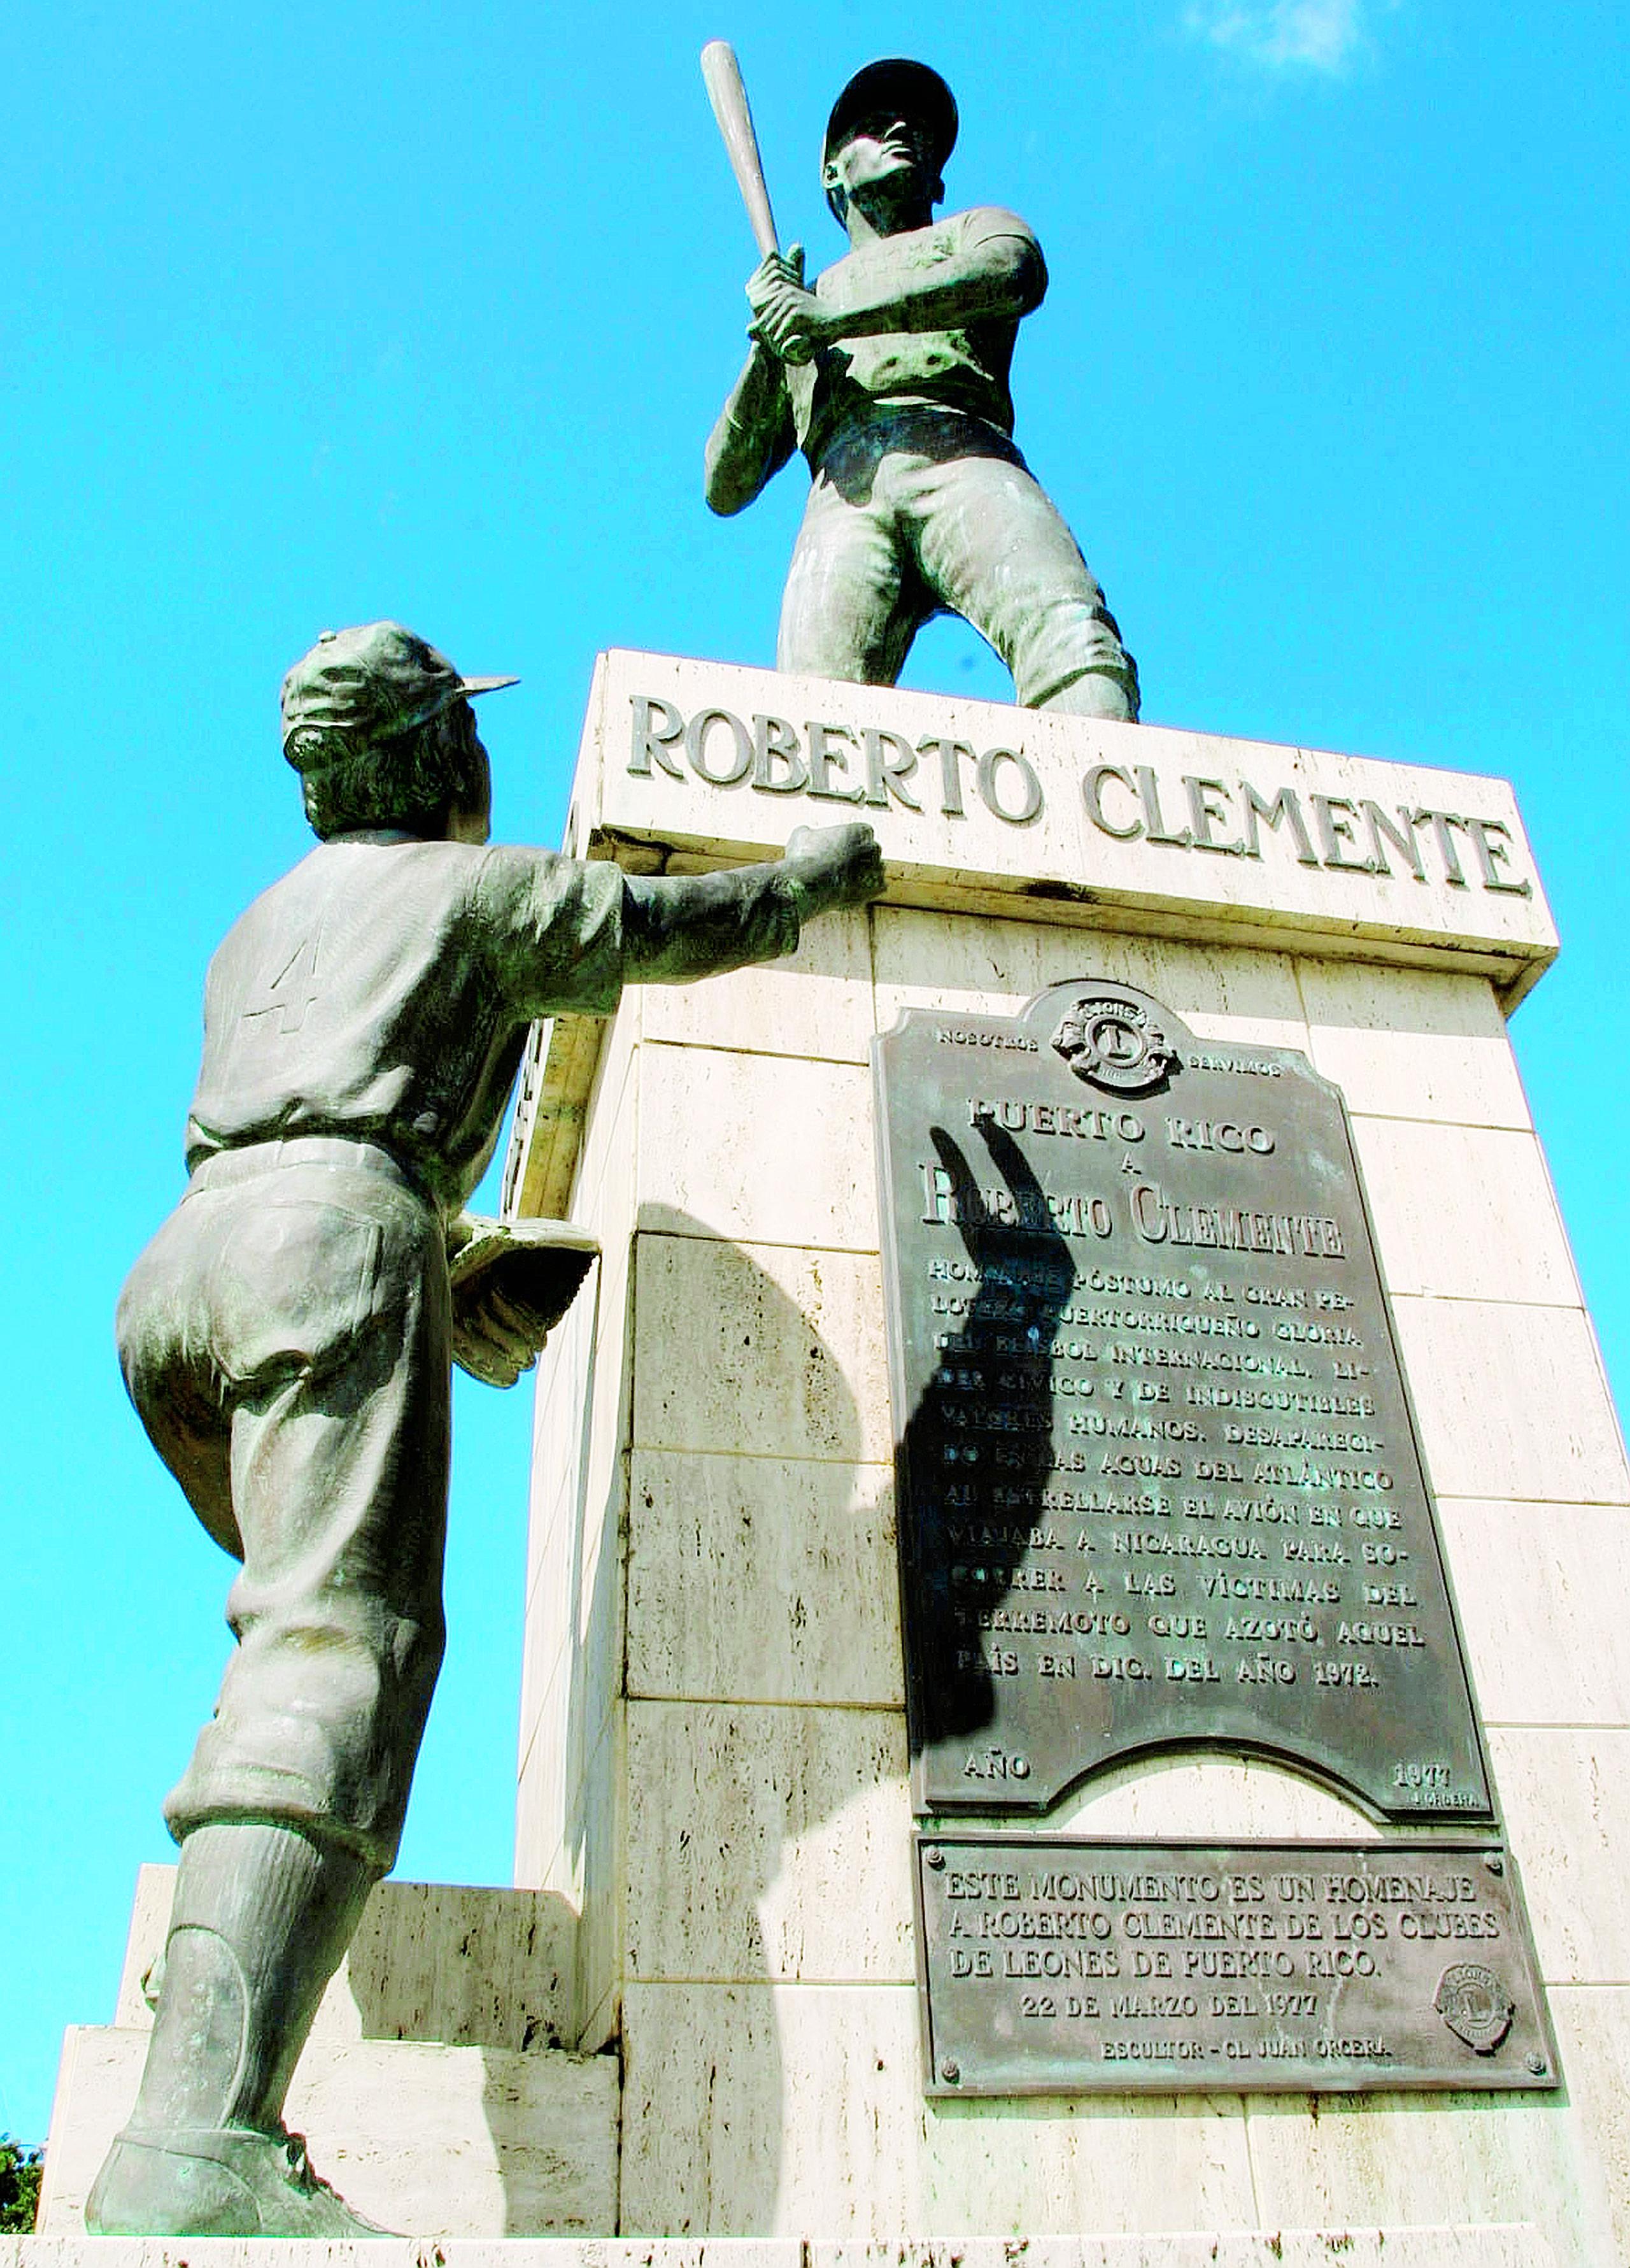 La Ciudad Deportiva Roberto Clemente, el gran sueño del Astro Boricua, se encuentra en un grave estado de deterioro e inoperante.